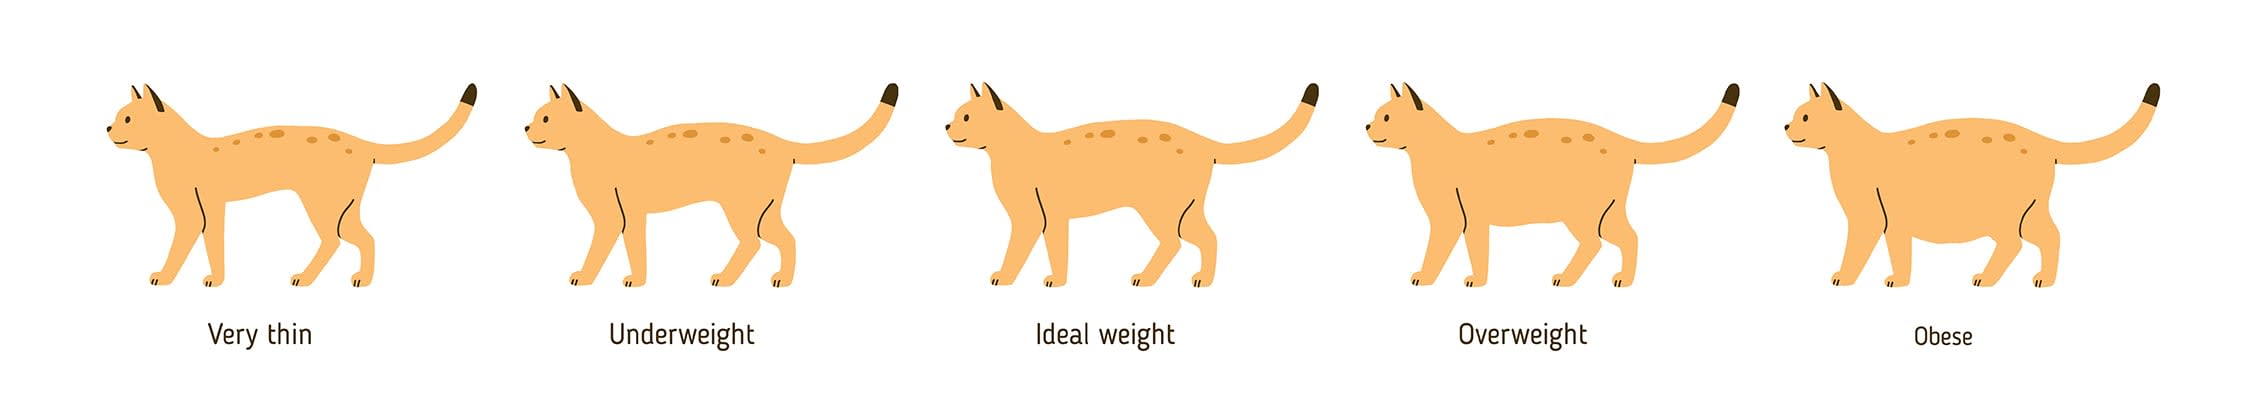 مخطط القط زيادة الوزن